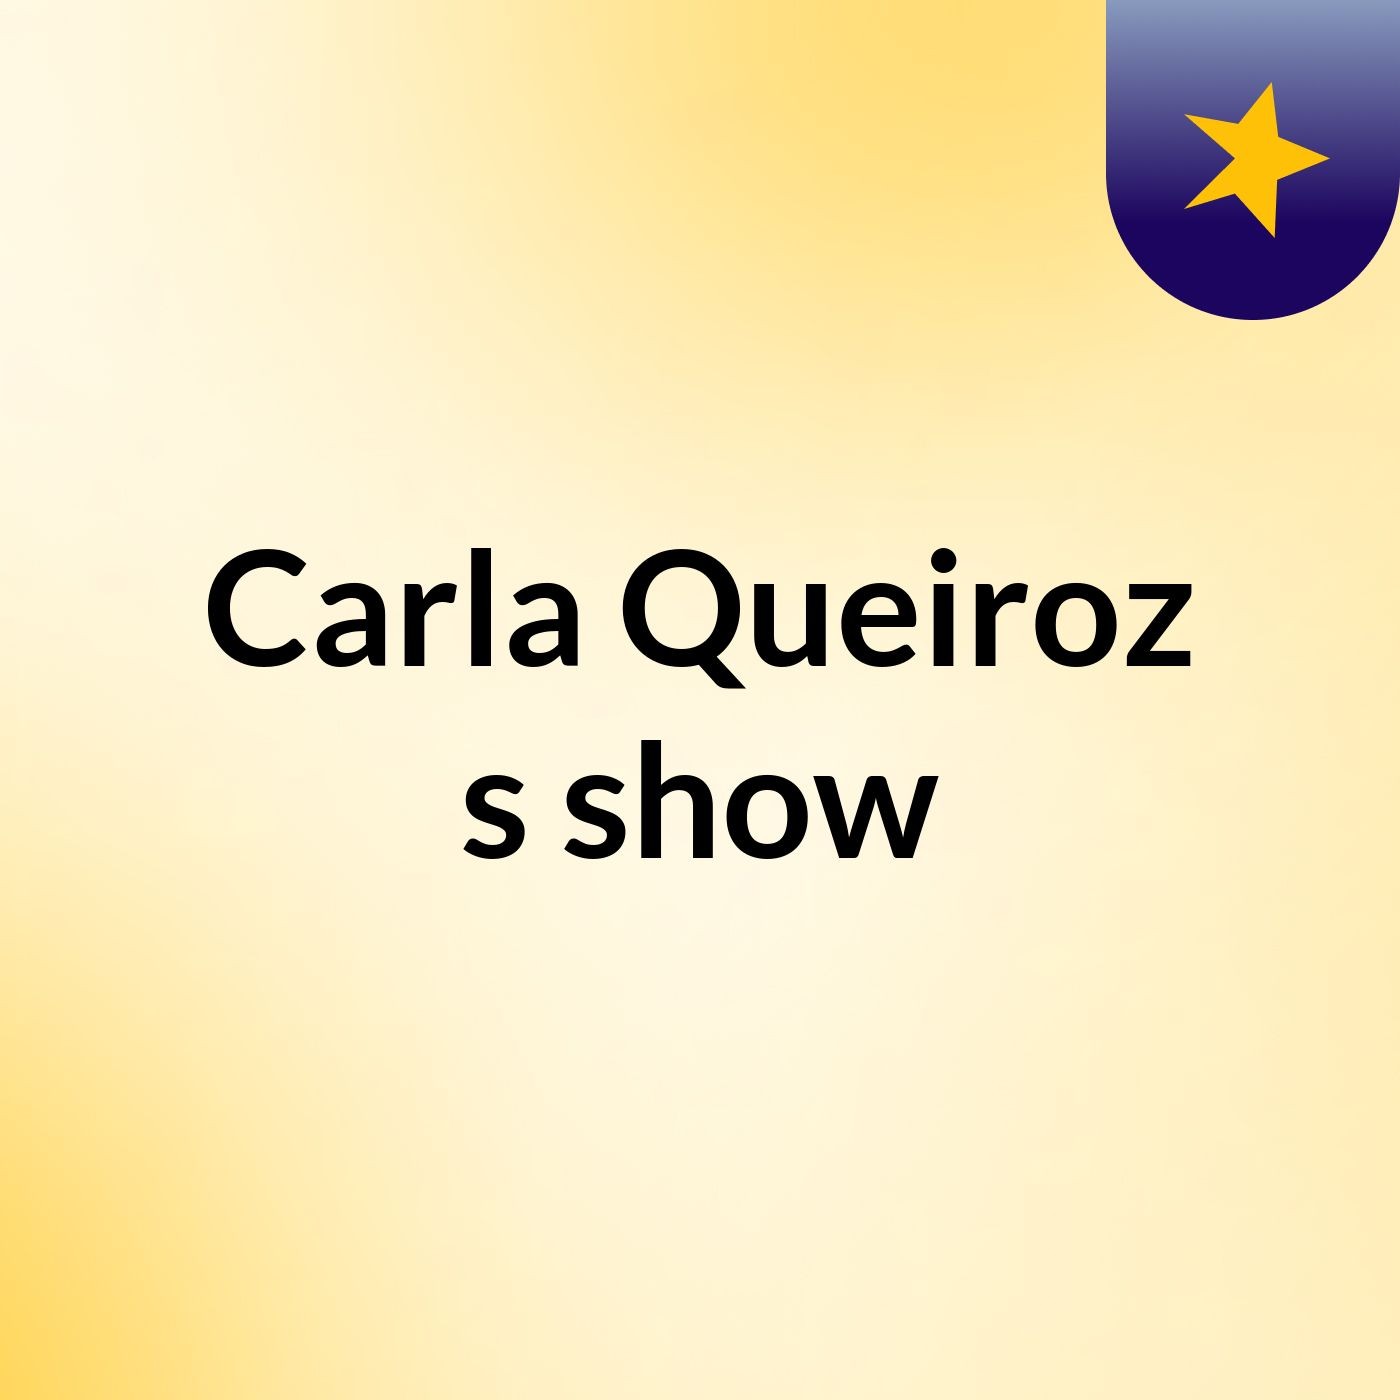 Carla Queiroz's show